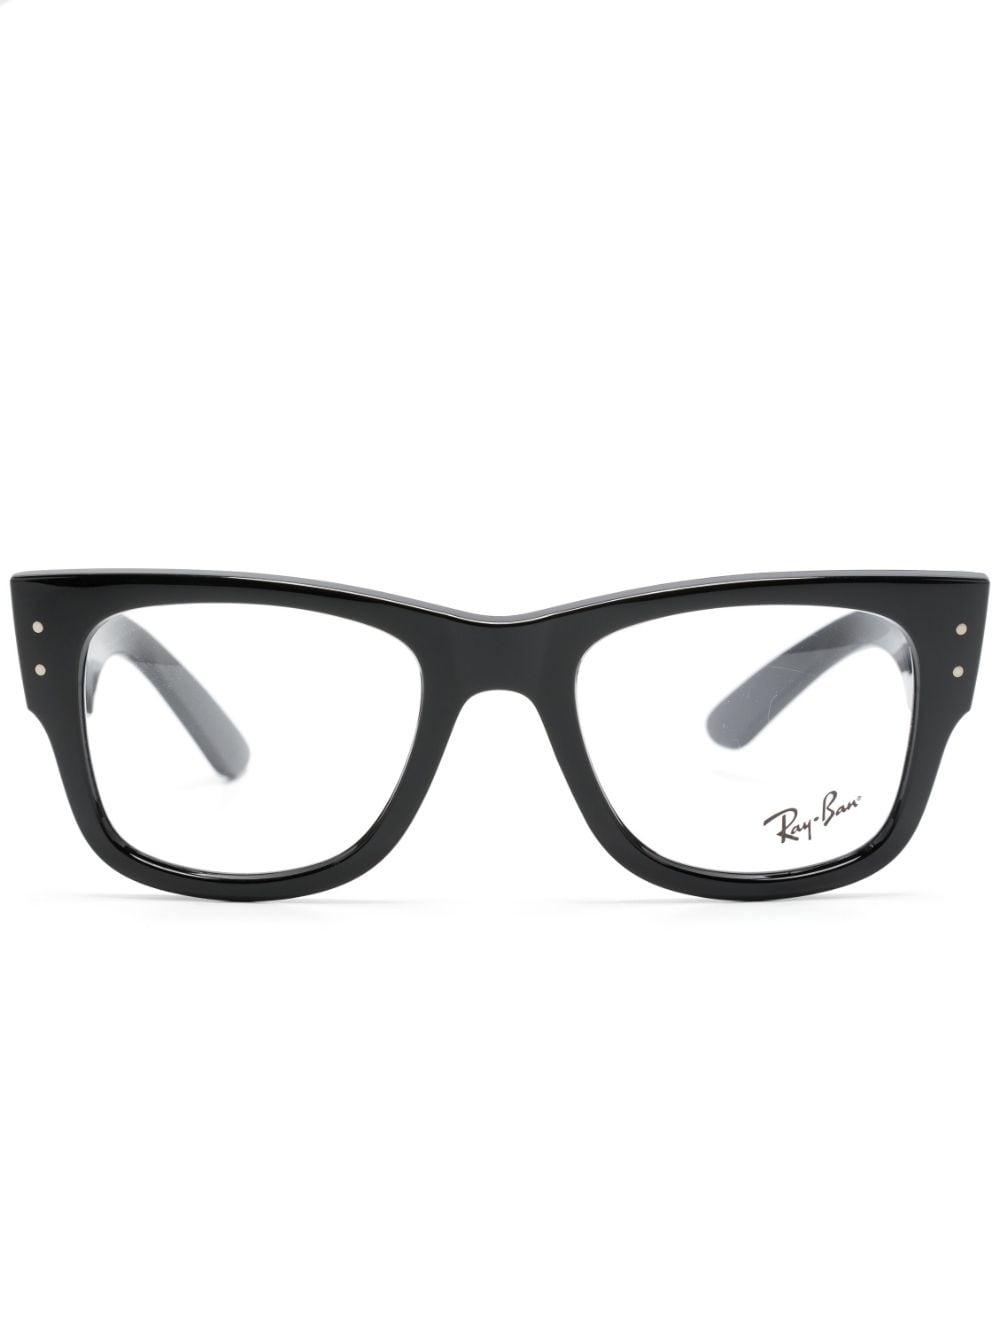 Ray-Ban Mega Wayfarer glasses - Black von Ray-Ban